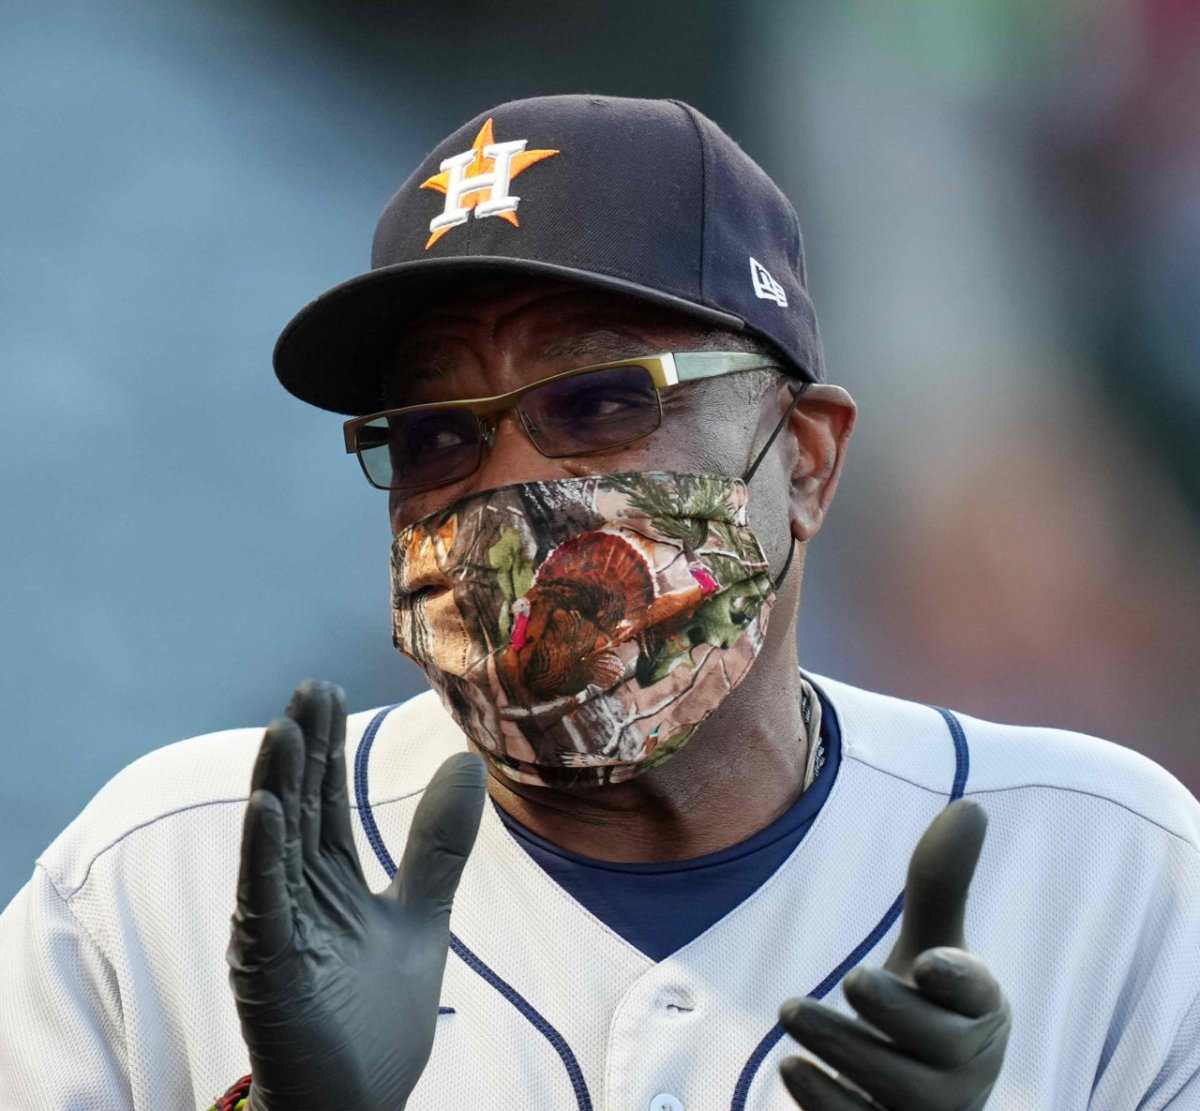 Pourquoi le manager Dusty Baker porte-t-il des gants pendant les jeux Astros de Houston ?